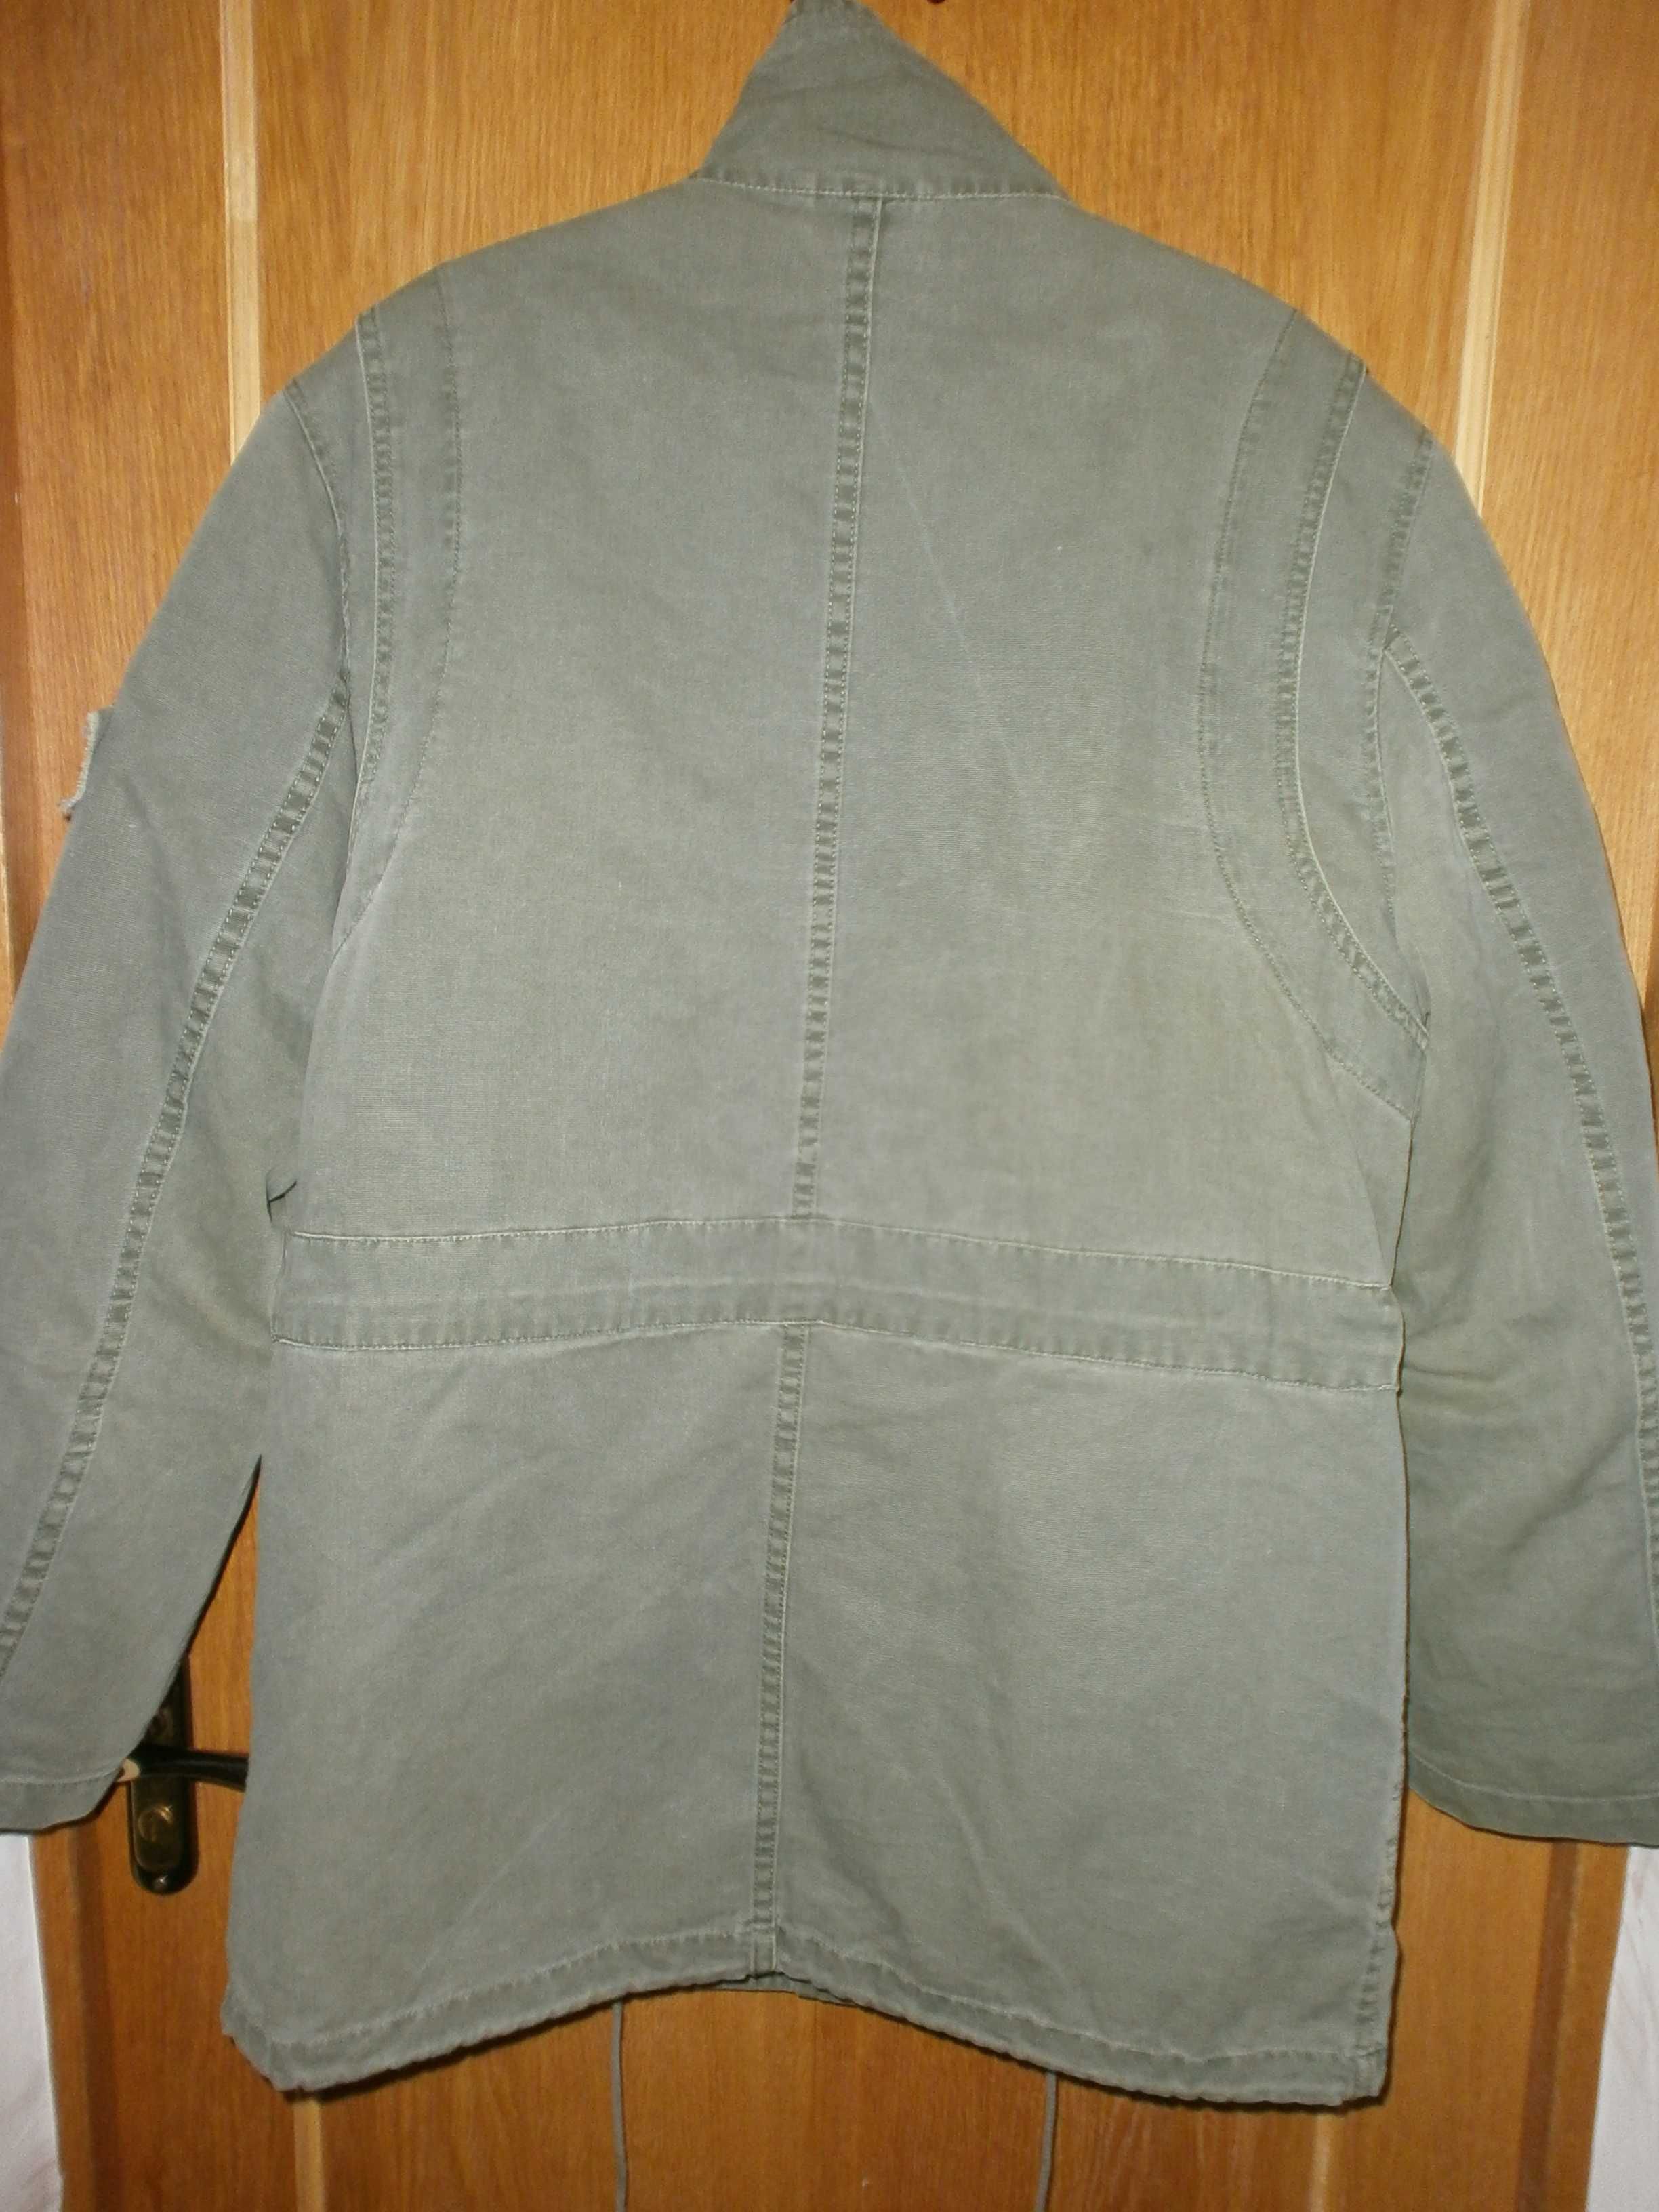 Куртка милитари IDpdt, олива, разм. L, наш 54. ПОГ-62 см. С подстёжкой